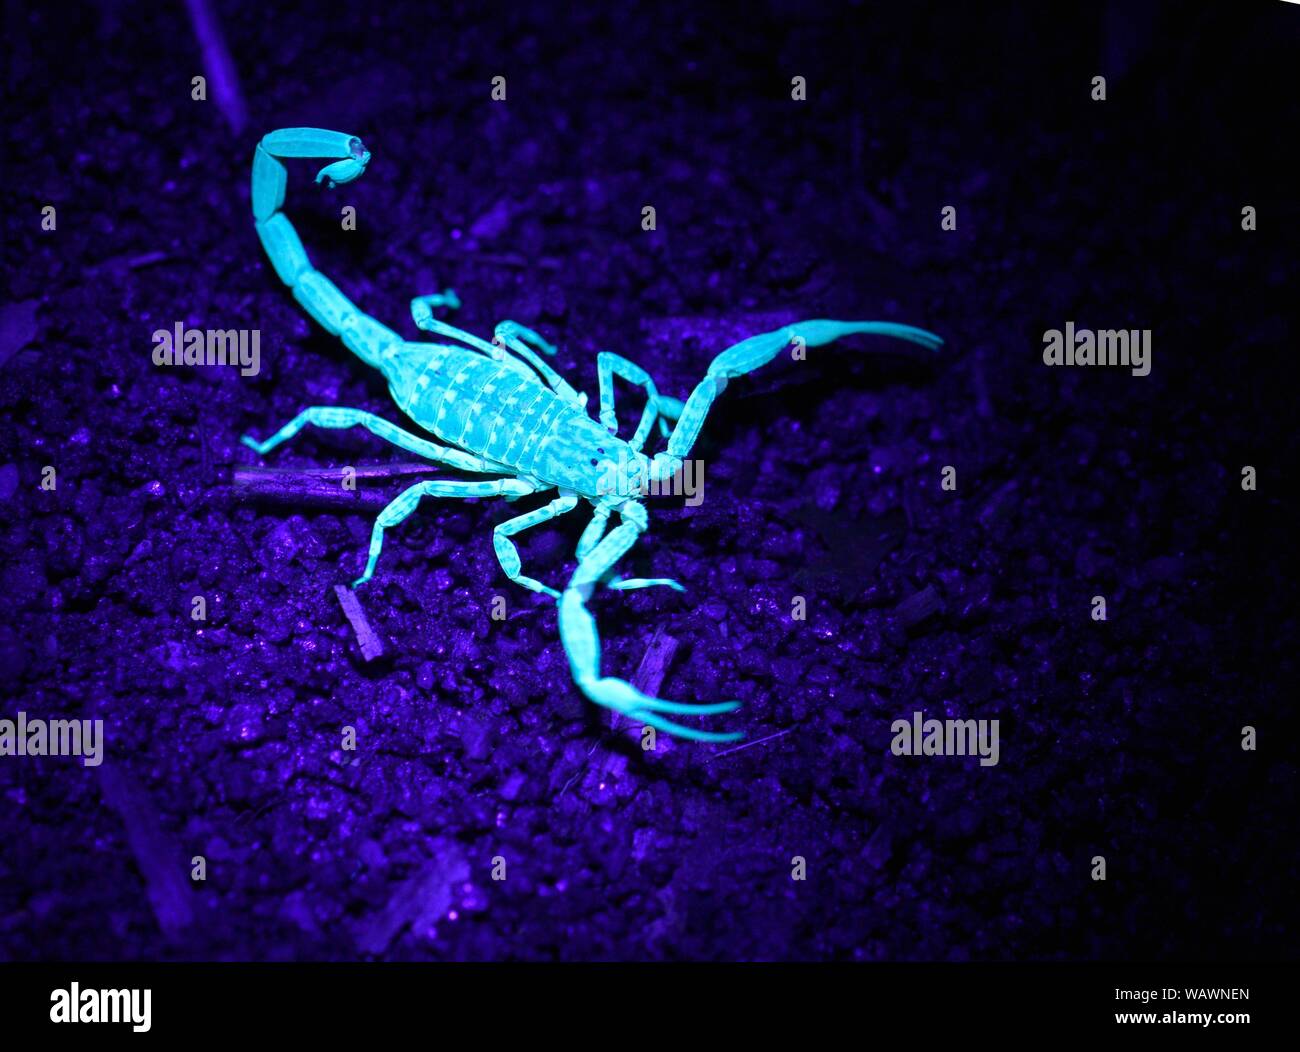 Des Scorpionides (Scorpion) dans la lumière UV, espèce inconnue, Parc National, au nord-est de Madagascar, Madagascar Banque D'Images